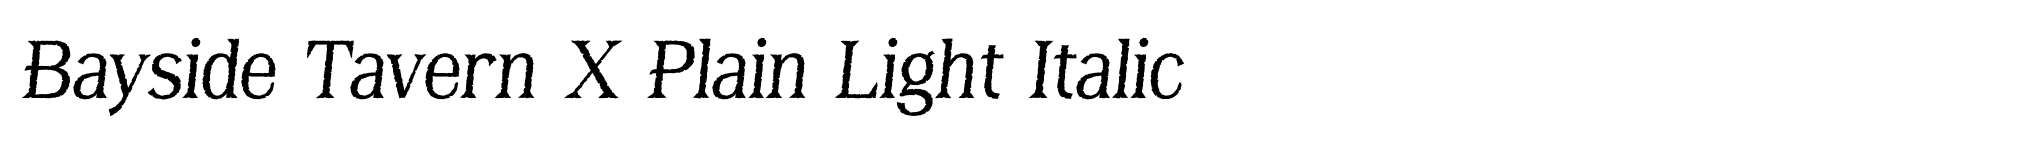 Bayside Tavern X Plain Light Italic image